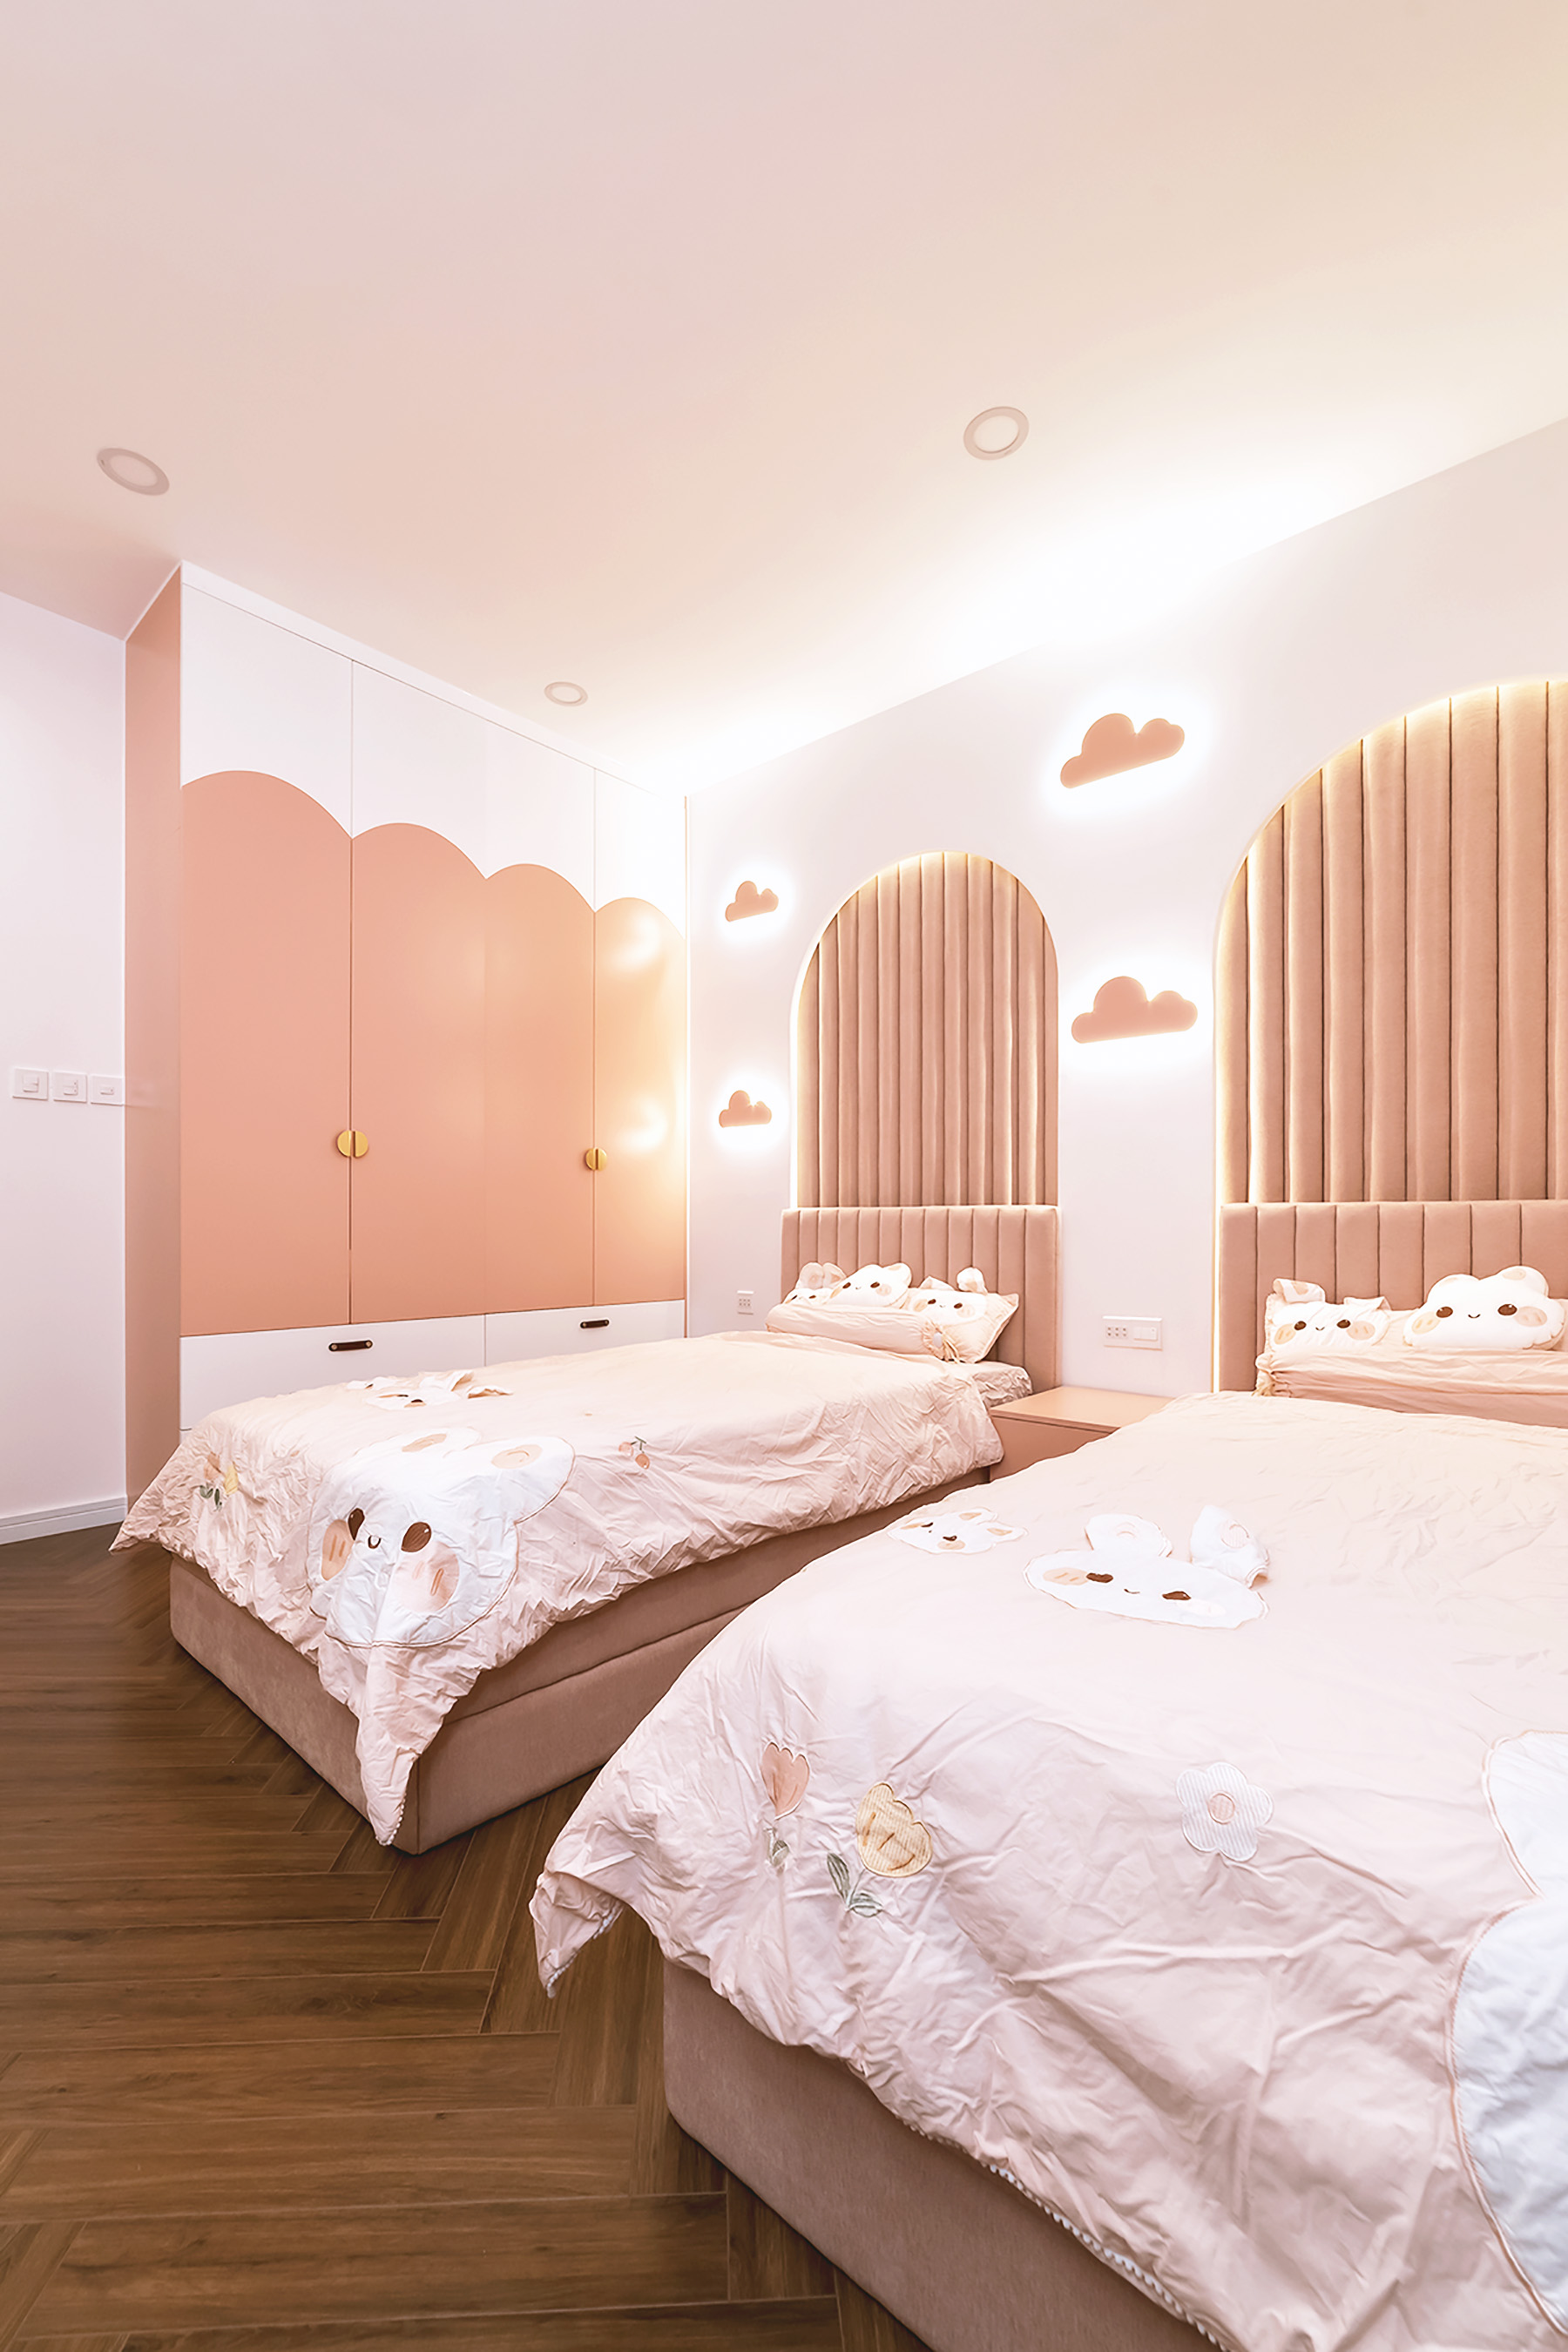 Phòng ngủ cho bé, phong cách Hiện đại Modern, hoàn thiện nội thất, căn hộ Saigon Pearl Topaz 2